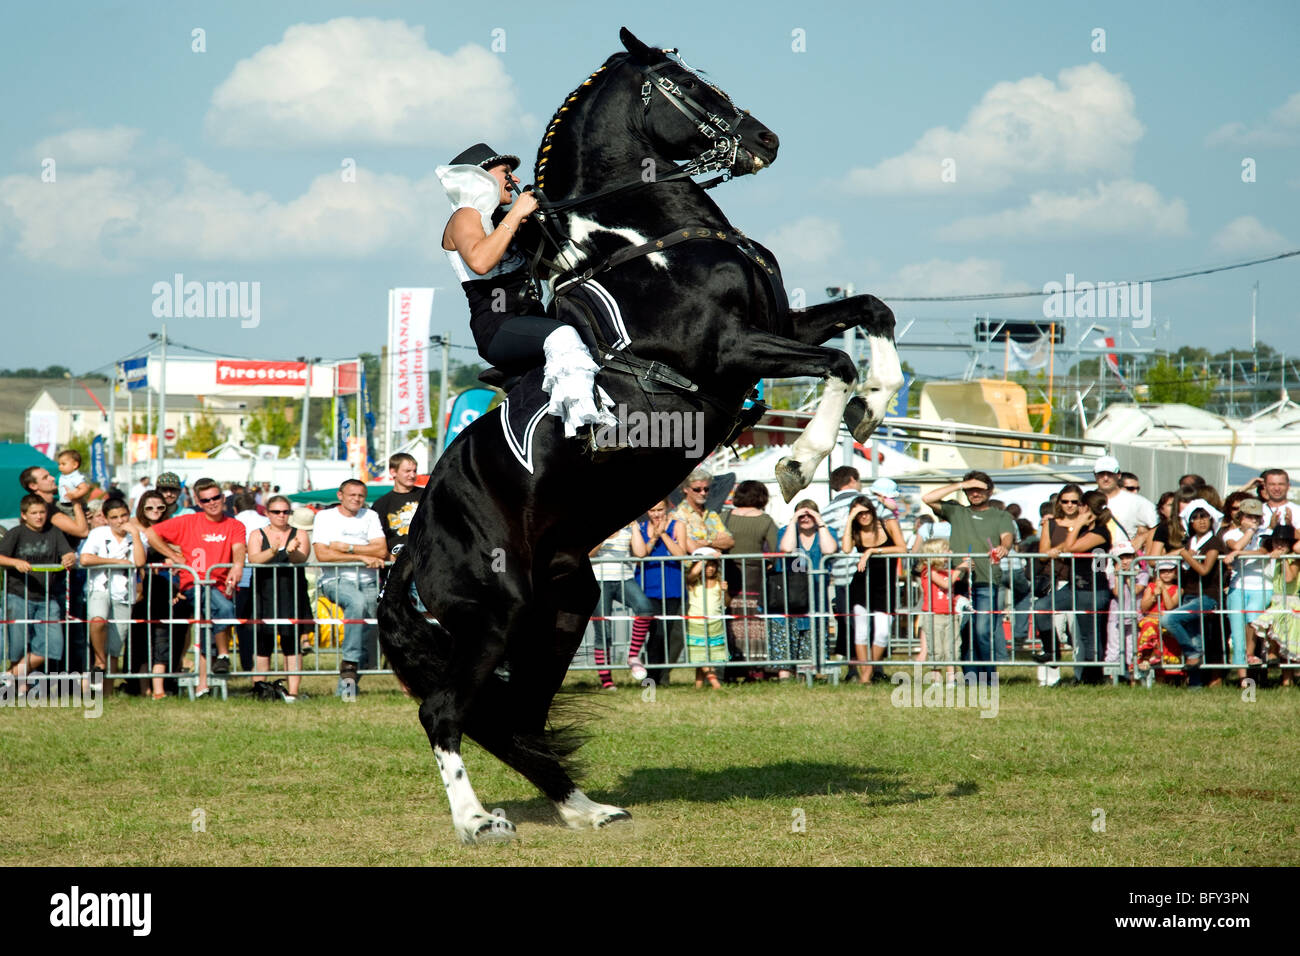 Stand groß, zeigen ein schön schwarzes Pferd und seinem eleganten Reiter ihr können Besucher der Show auf einer Gascon Messe zu beobachten Stockfoto